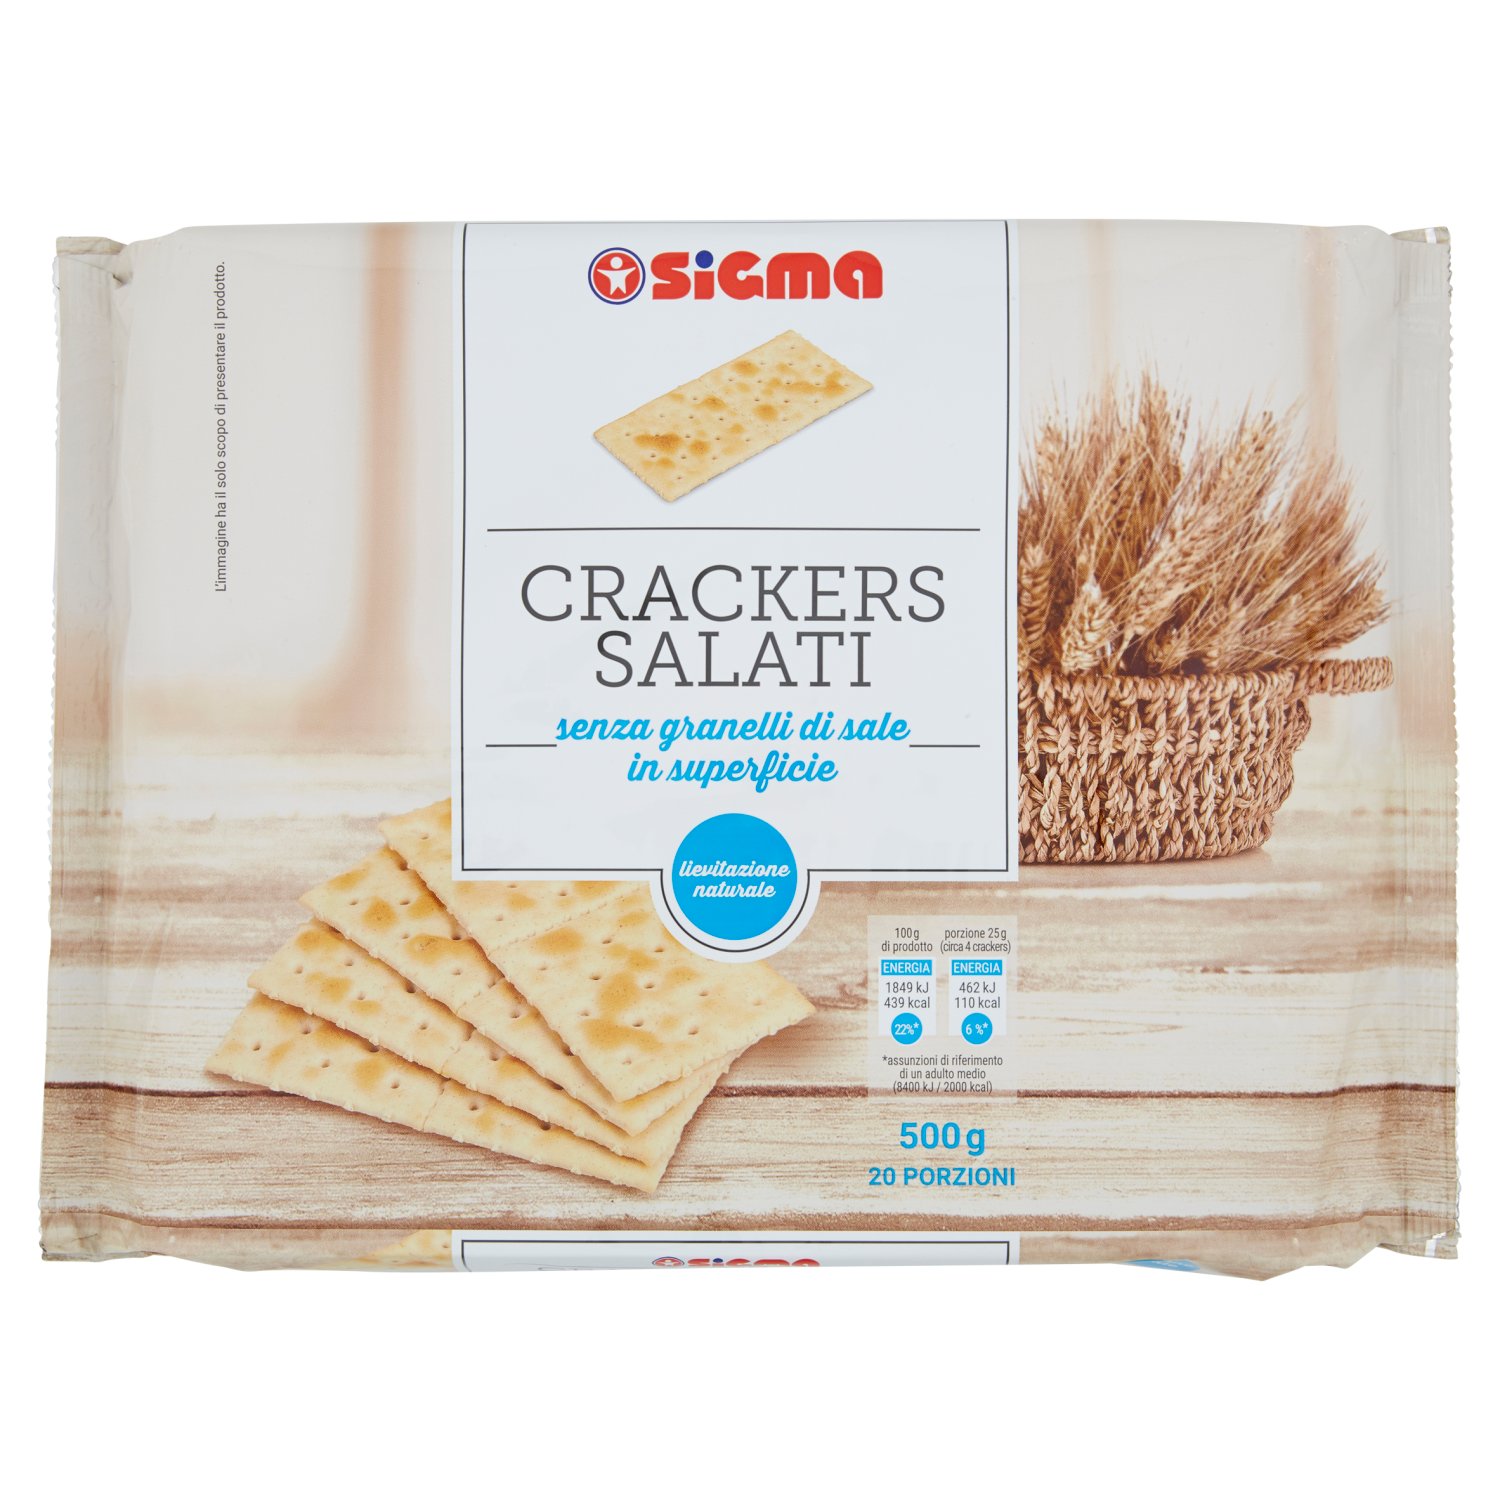 Sigma Crackers Salati con granelli di sale in superficie 20 x 25 g -  SuperSIGMA